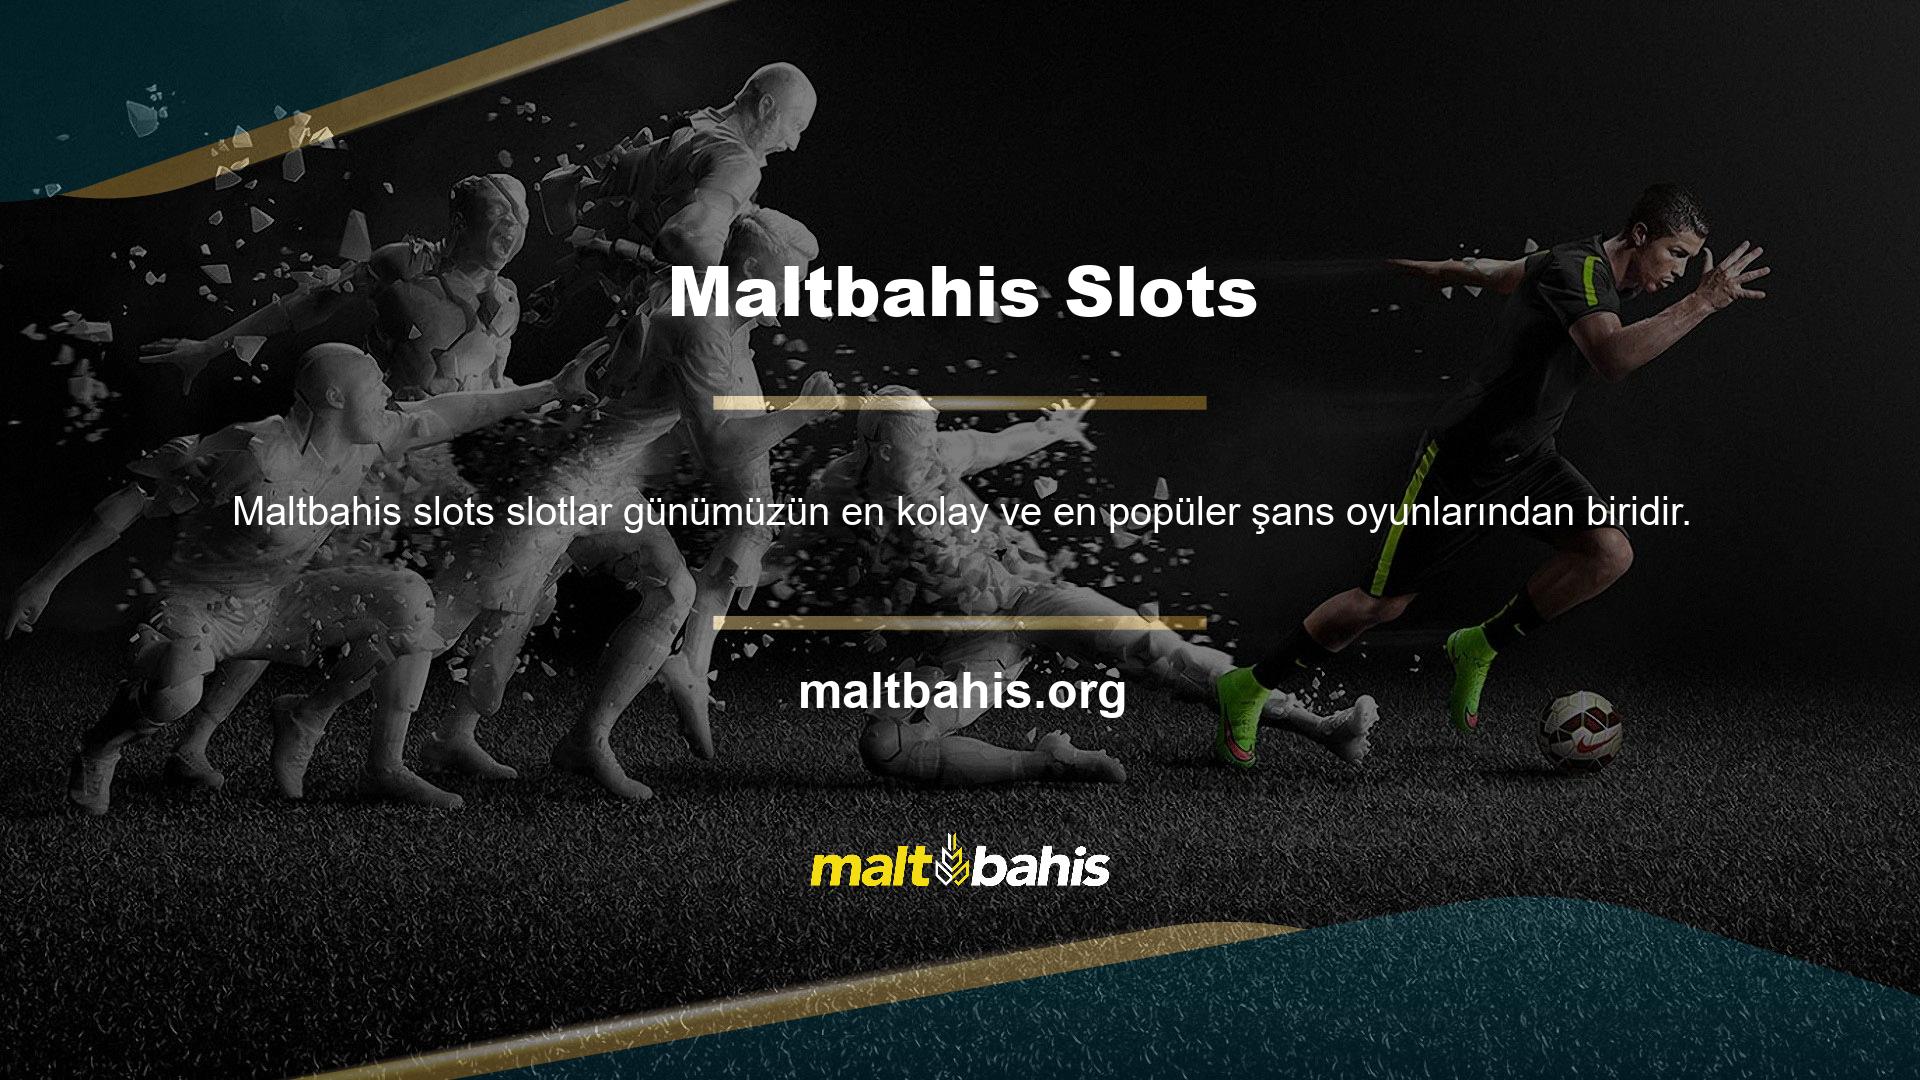 Maltbahis slot siteleri Türkiye'de genellikle premium hizmetler ve tercih edilen birçok slot oyunu sunmaktadır